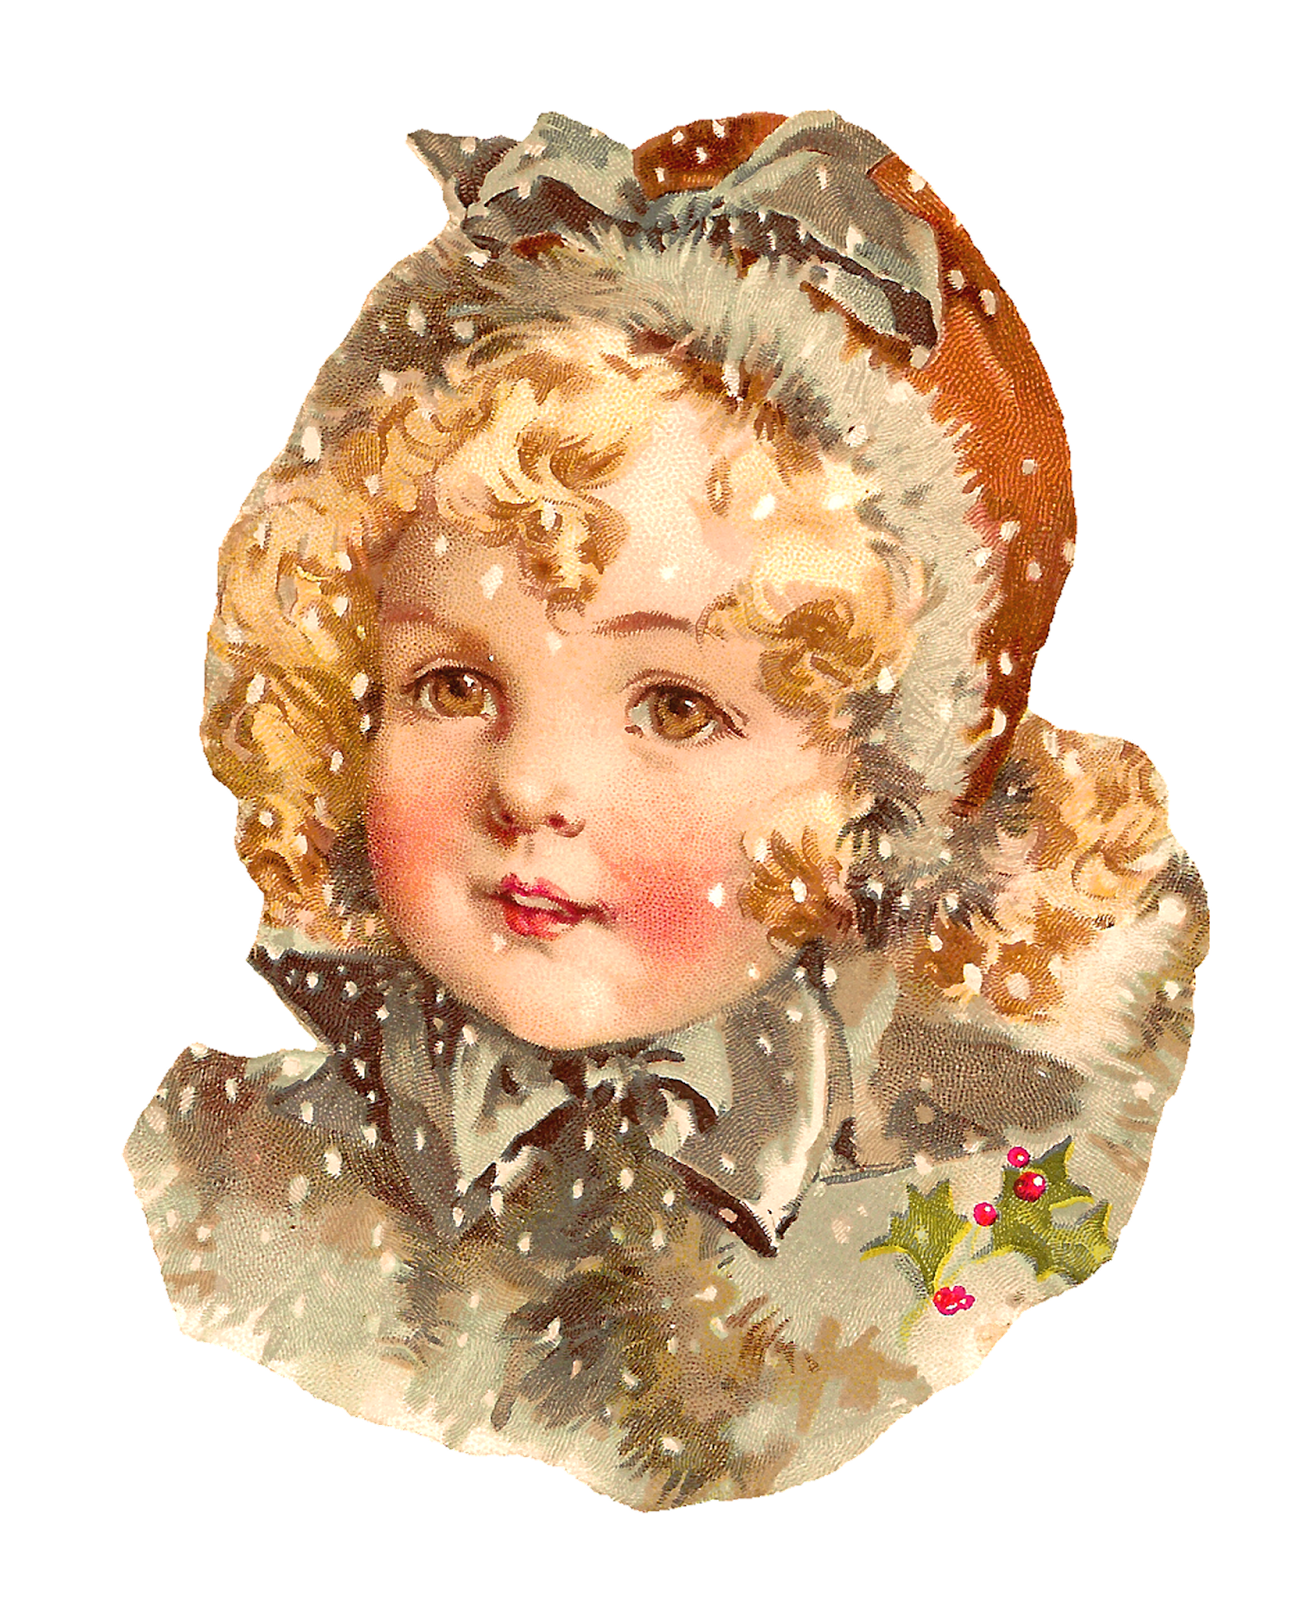 Girl Christmas Snow Image Design